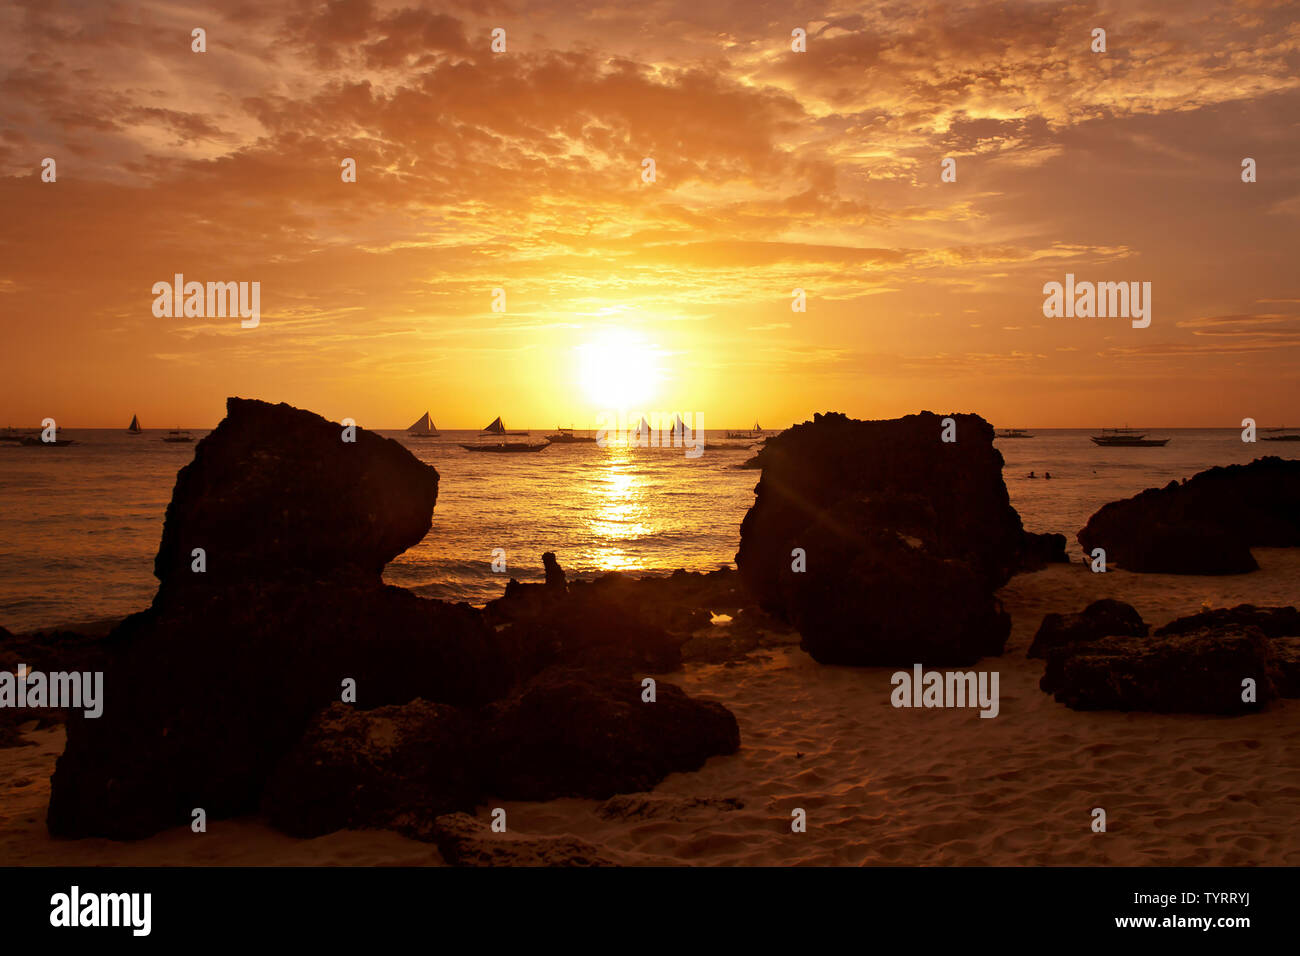 De grands rochers sur la plage au coucher du soleil avec des bateaux en mer en arrière-plan, l'île de Boracay, Philippines Banque D'Images